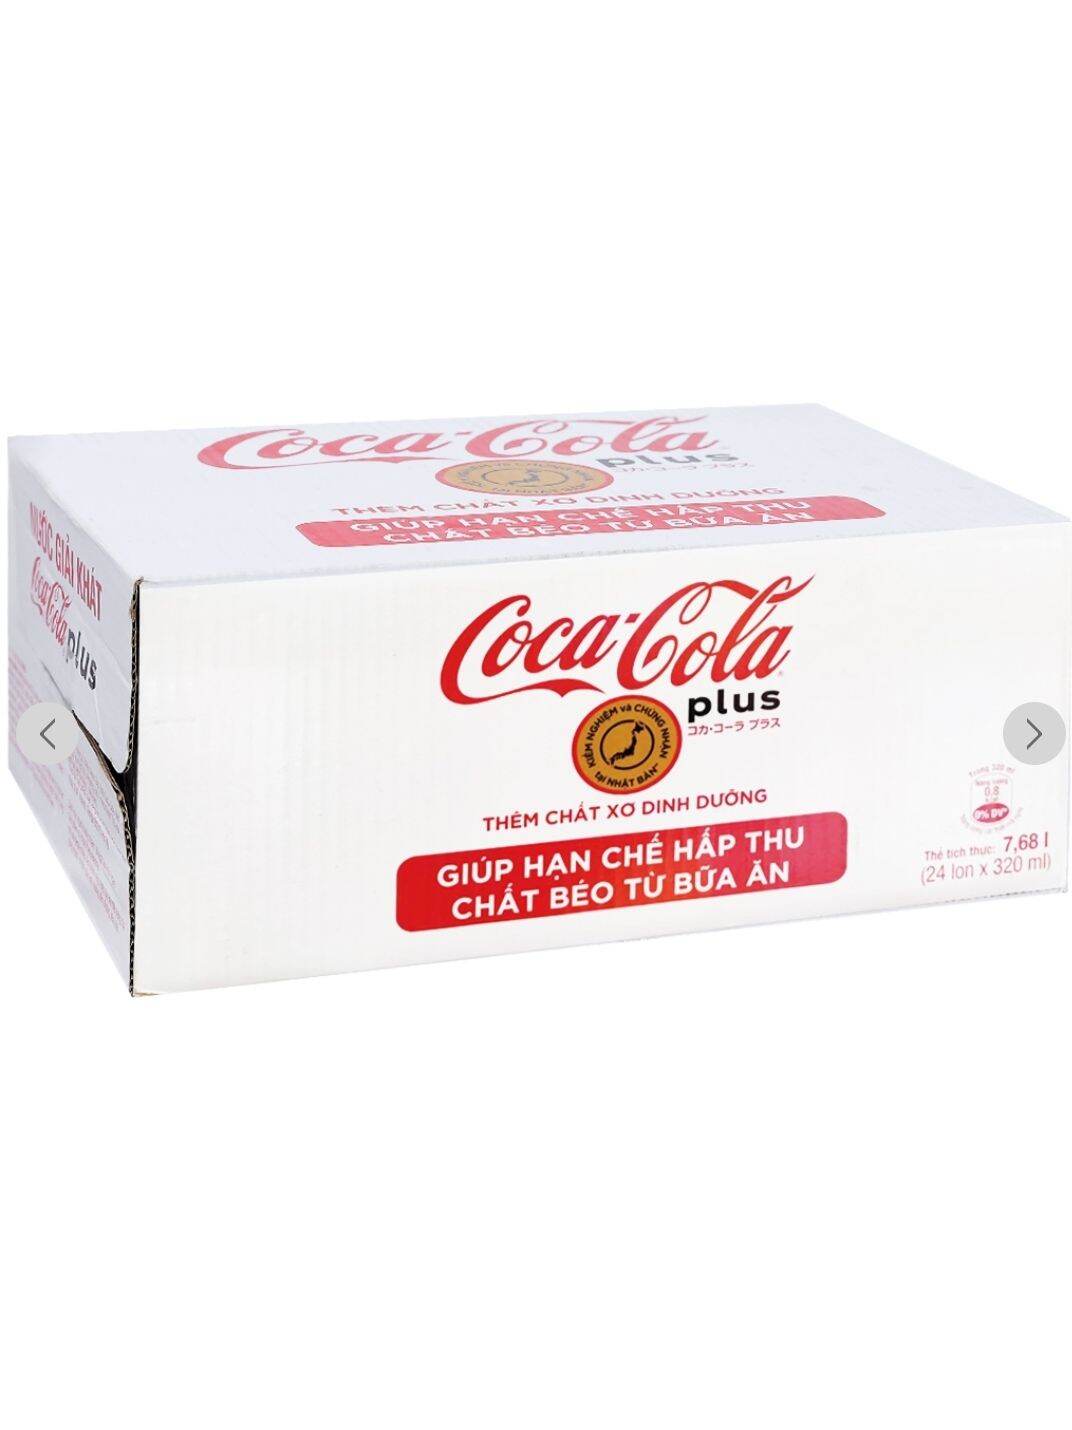 coca - cola plus 320ml lon Mô tả sản phẩm✕

Từ thương hiệu nước giải khát Coca Cola nổi tiếng thế giới được ưa chuộng tại nhiều nhiều quốc gia. 24 lon nước ngọt Coca Cola Plus 320ml bổ sung thêm chất xơ dinh dưỡng, không đường không calo.